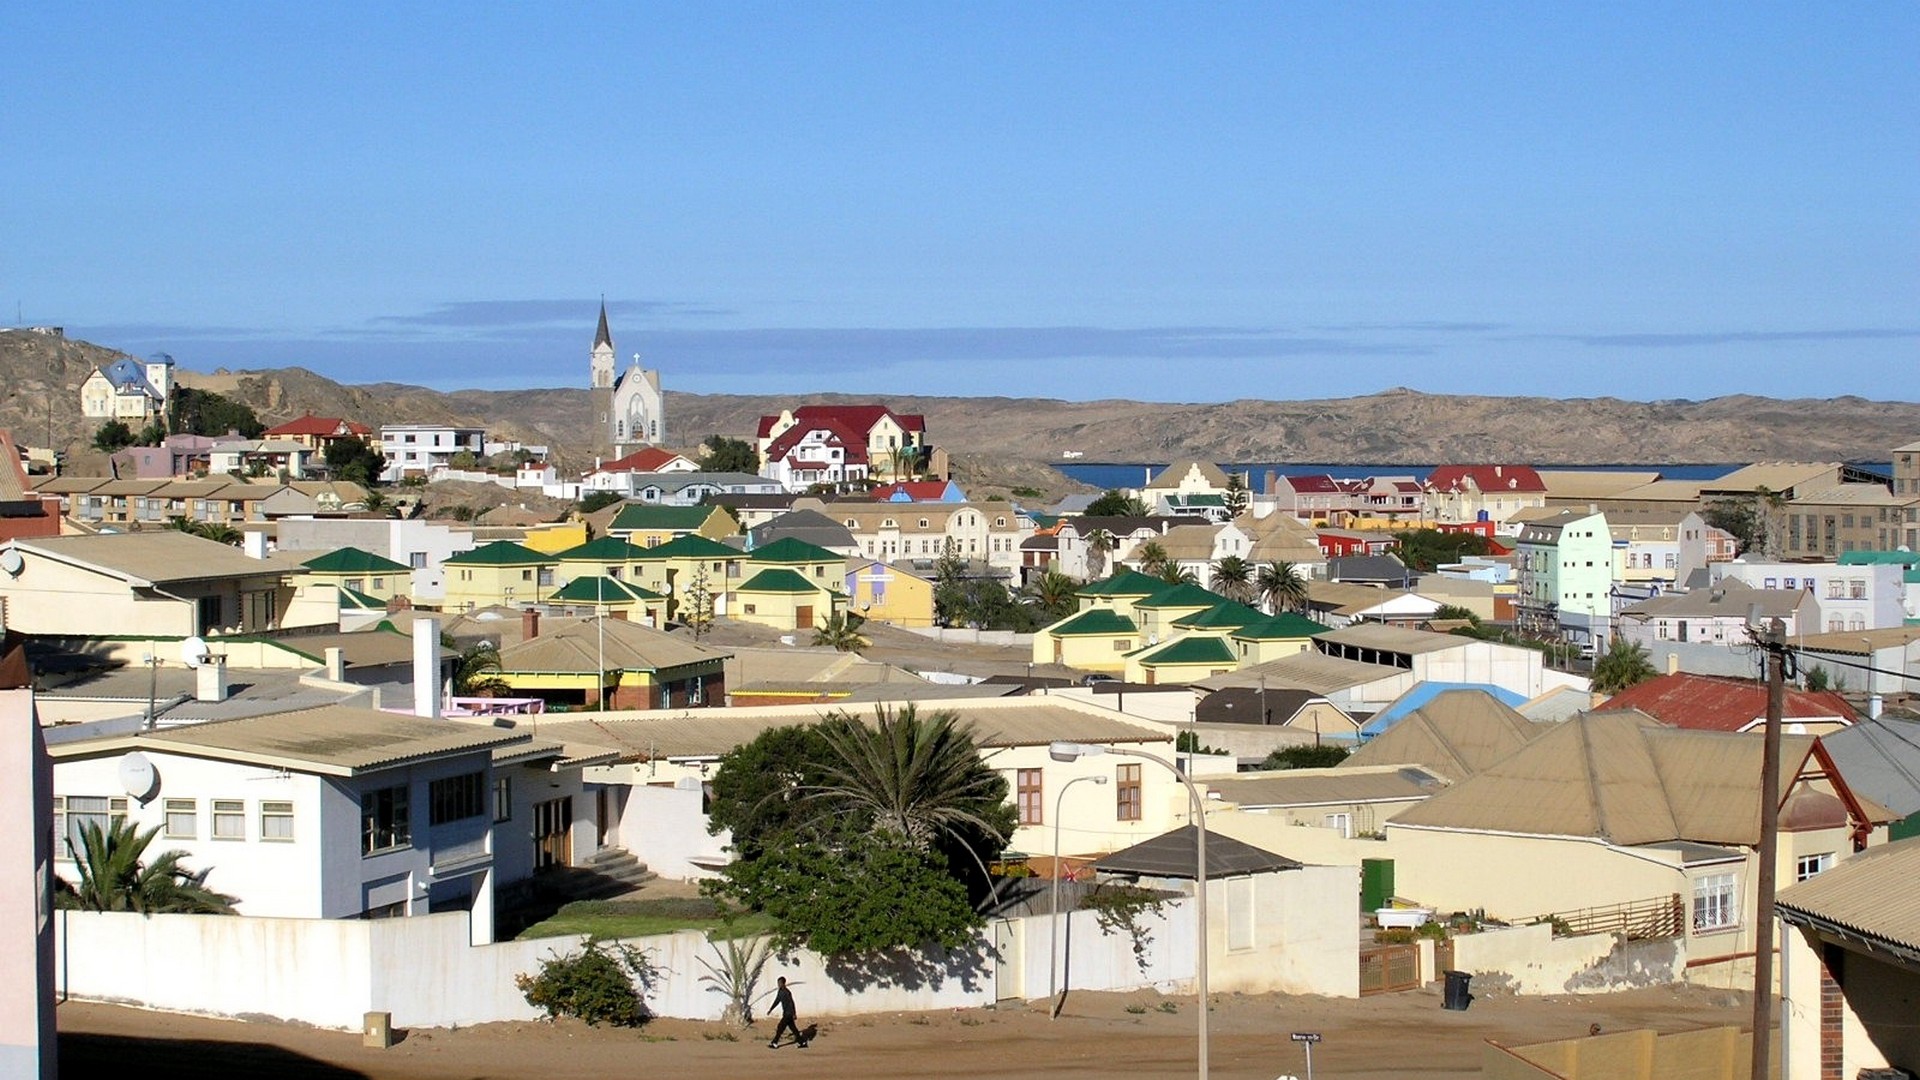 Lüderitz, petite cité coloniale allemande  de Namibie, sur les rives de l'Atlantique (photo wikimedia commons Peter Stenglein CC-BY-SA-2.5)